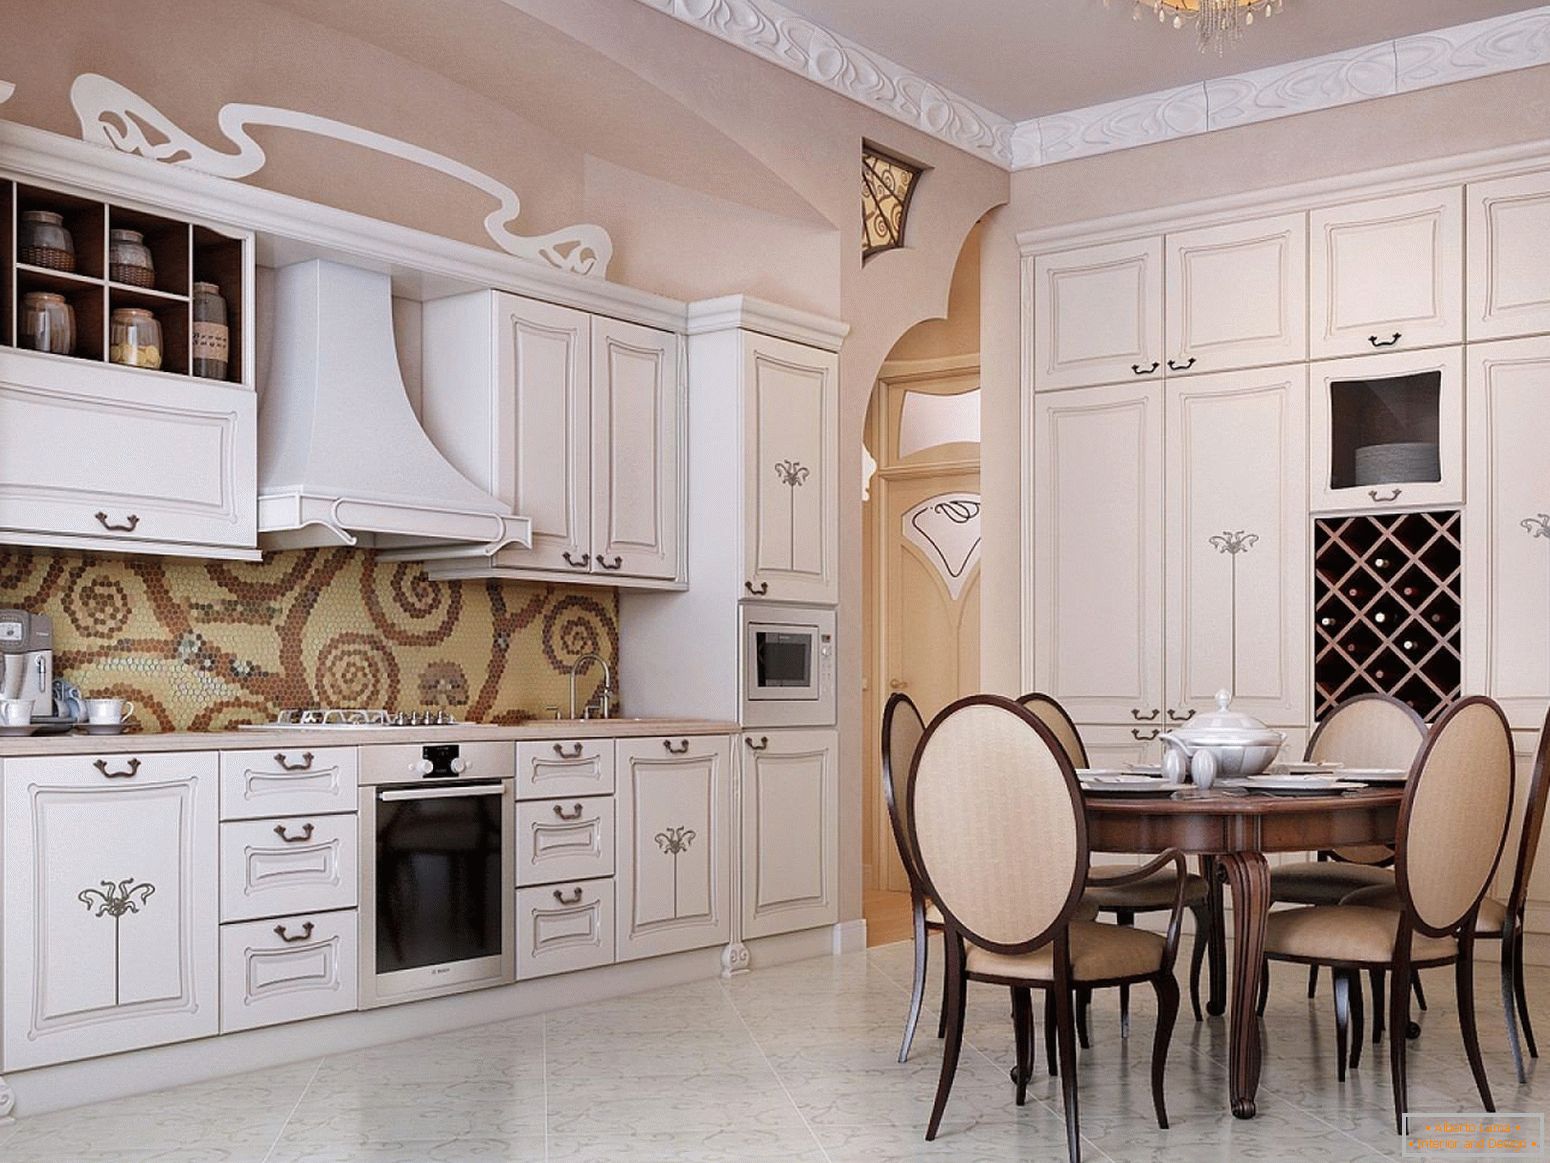 Dekor velike kuhinje v slogu Art Nouveau